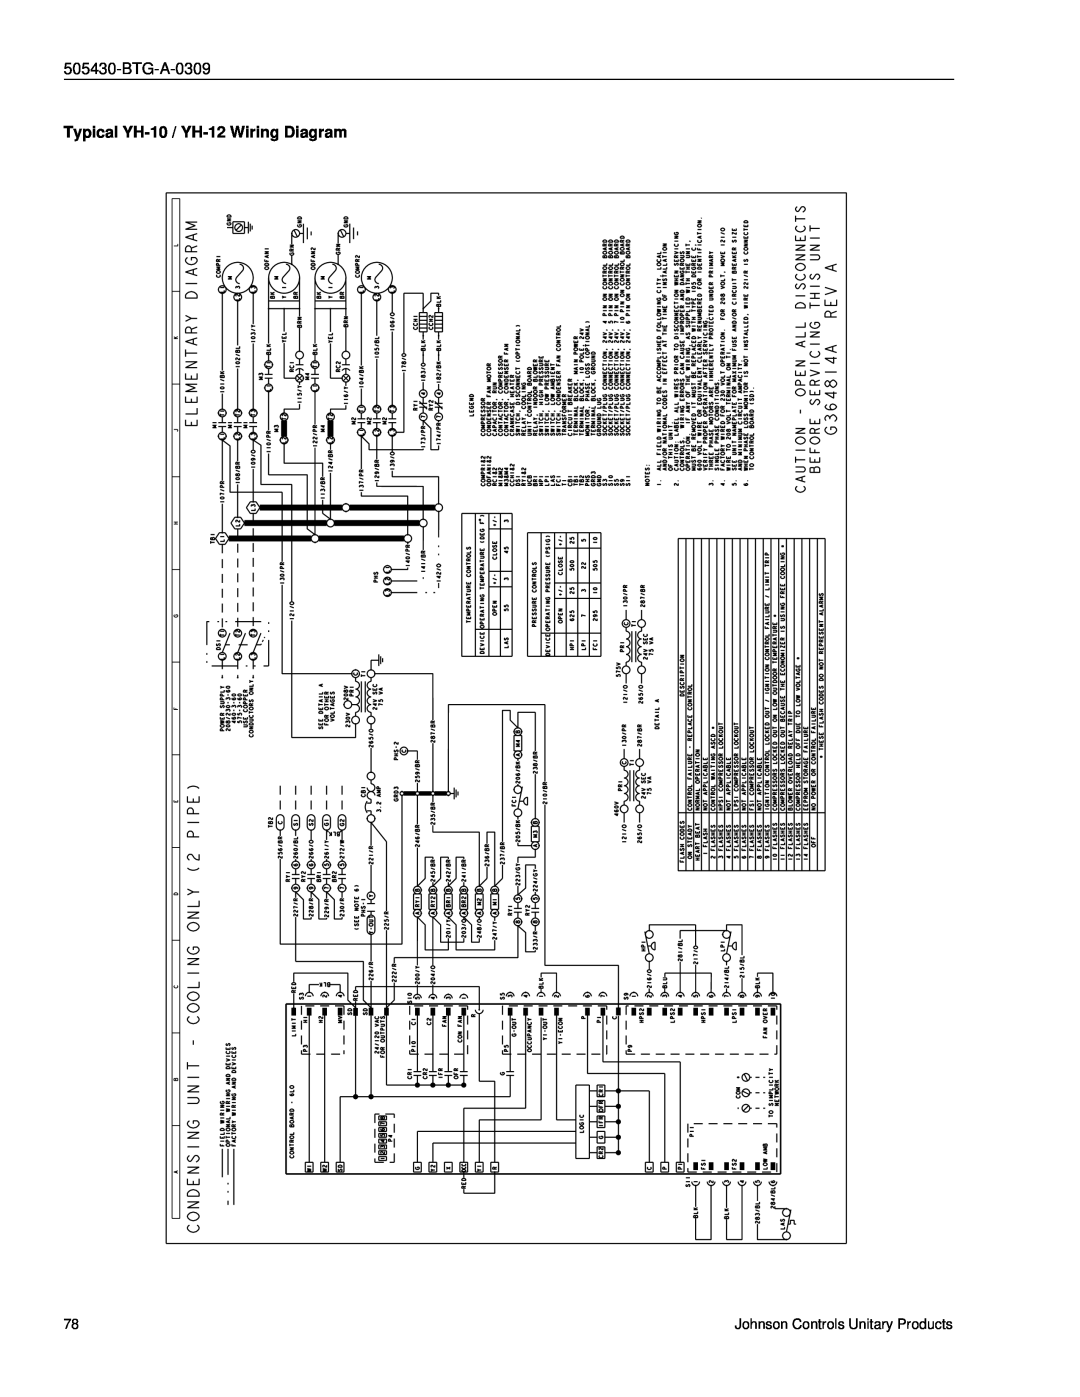 Johnson Controls R-410A manual Typical YH-10 / YH-12Wiring Diagram, BTG-A-0309 